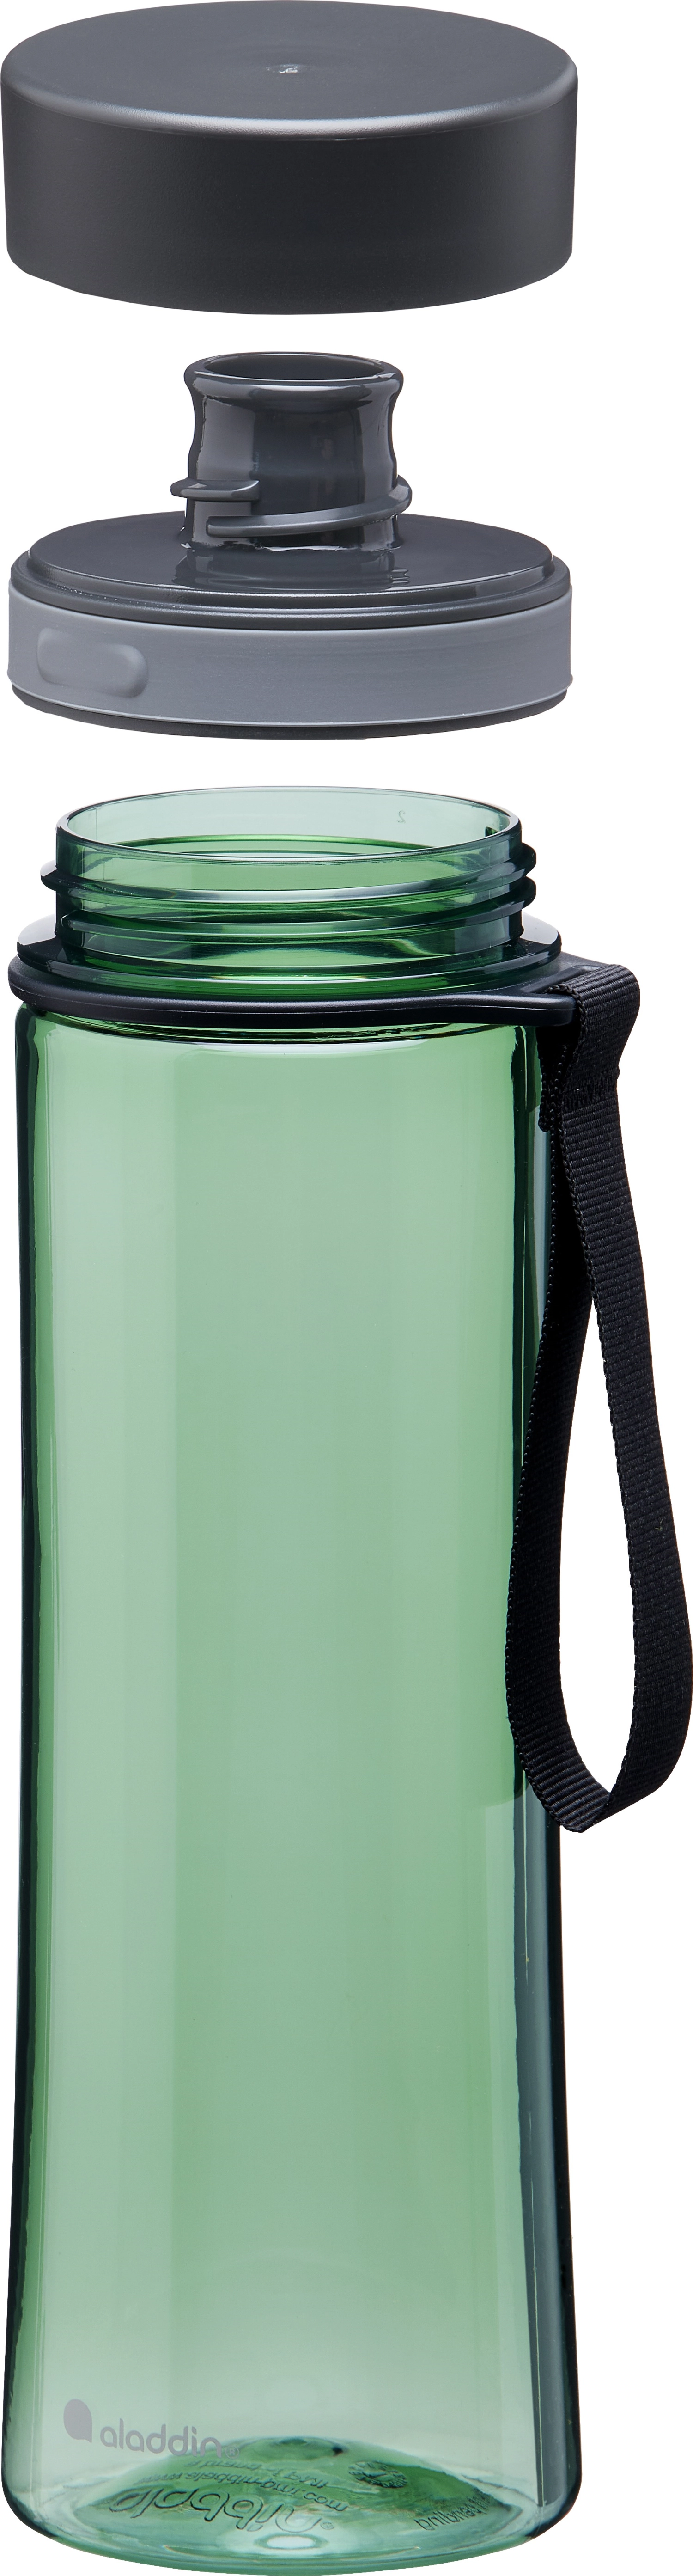 Aveo Water Bottle 0.6L Basil Green